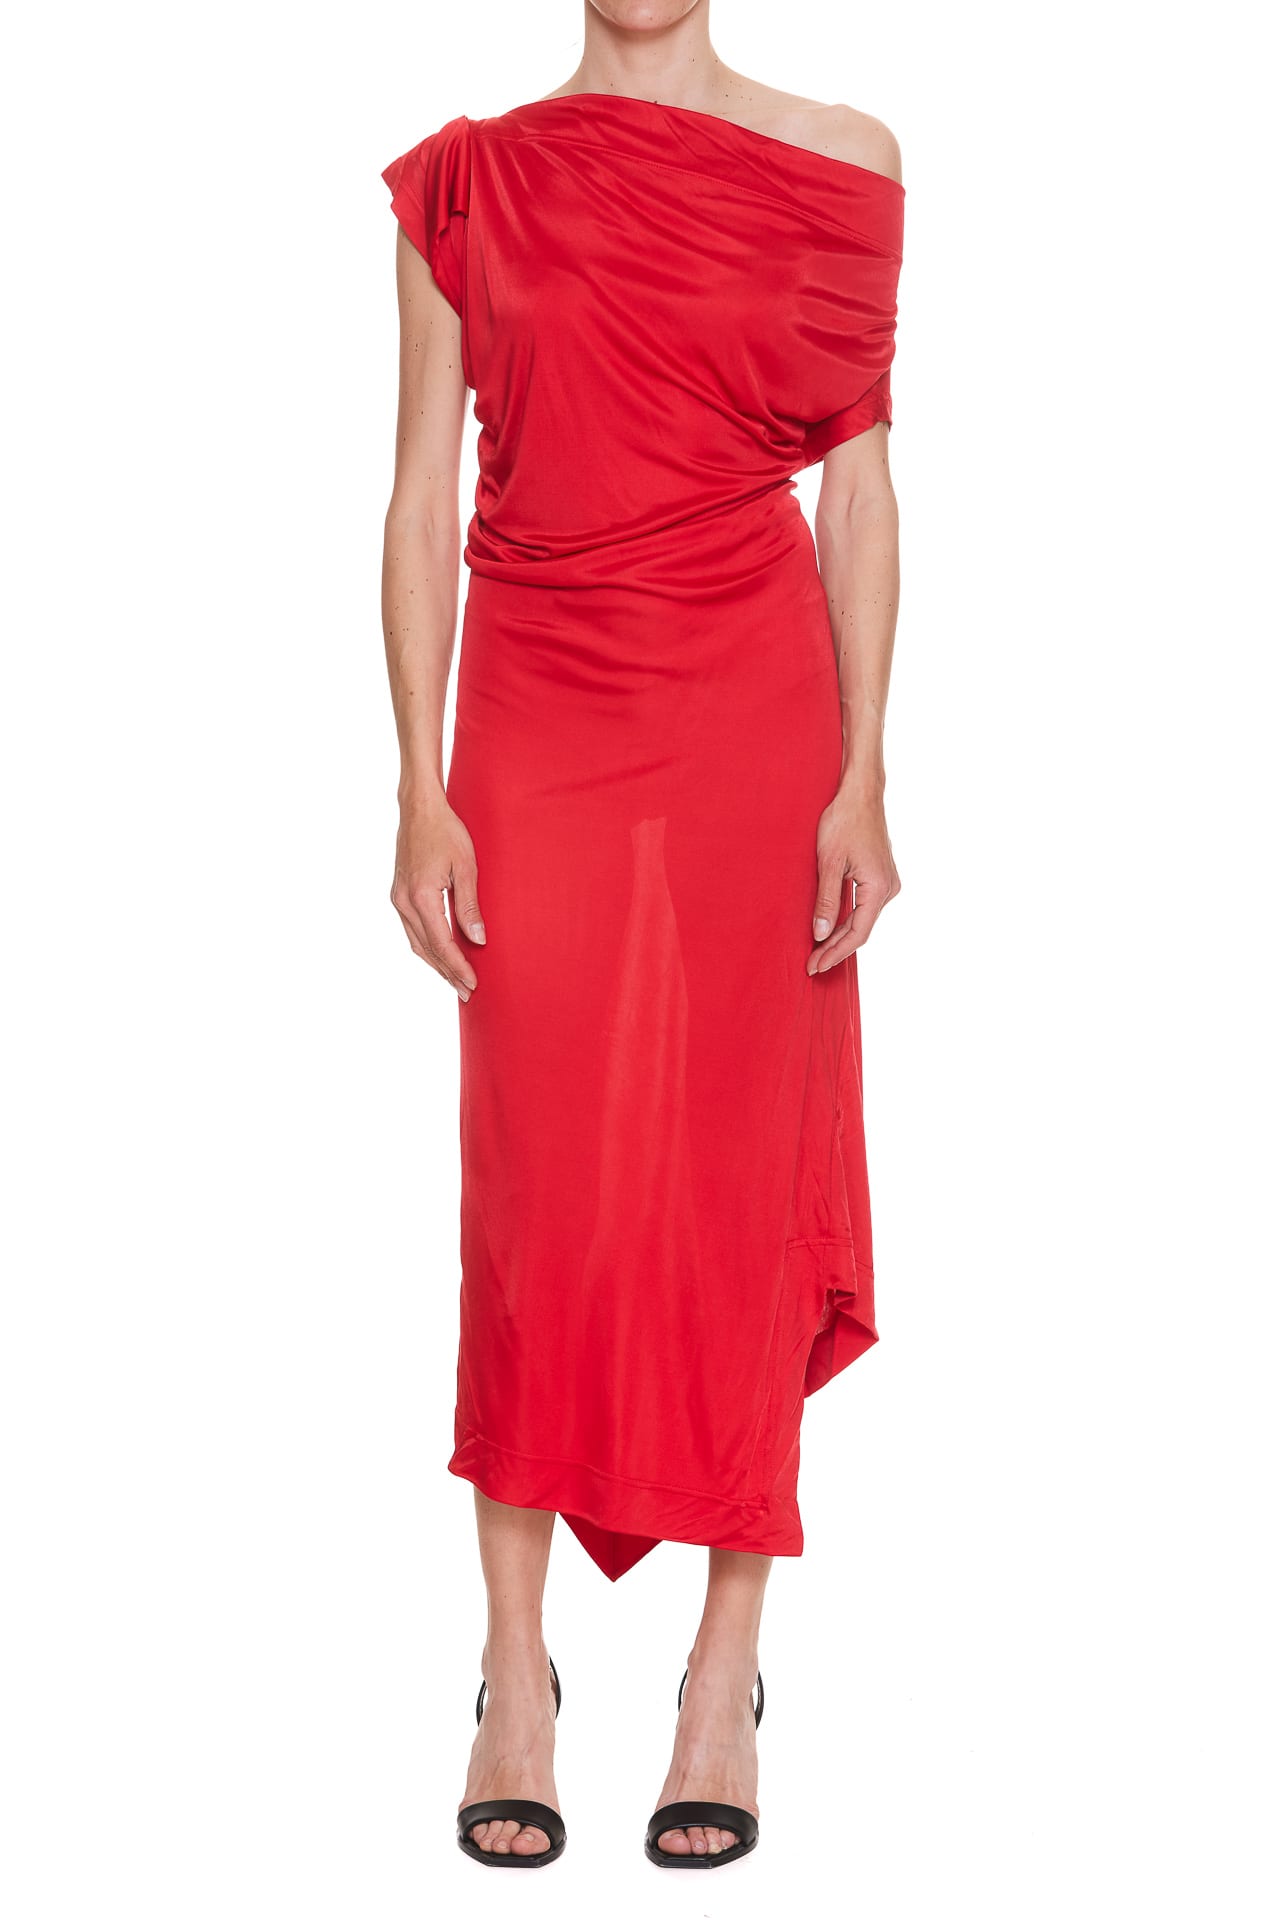 Vivienne Westwood Utah Dress